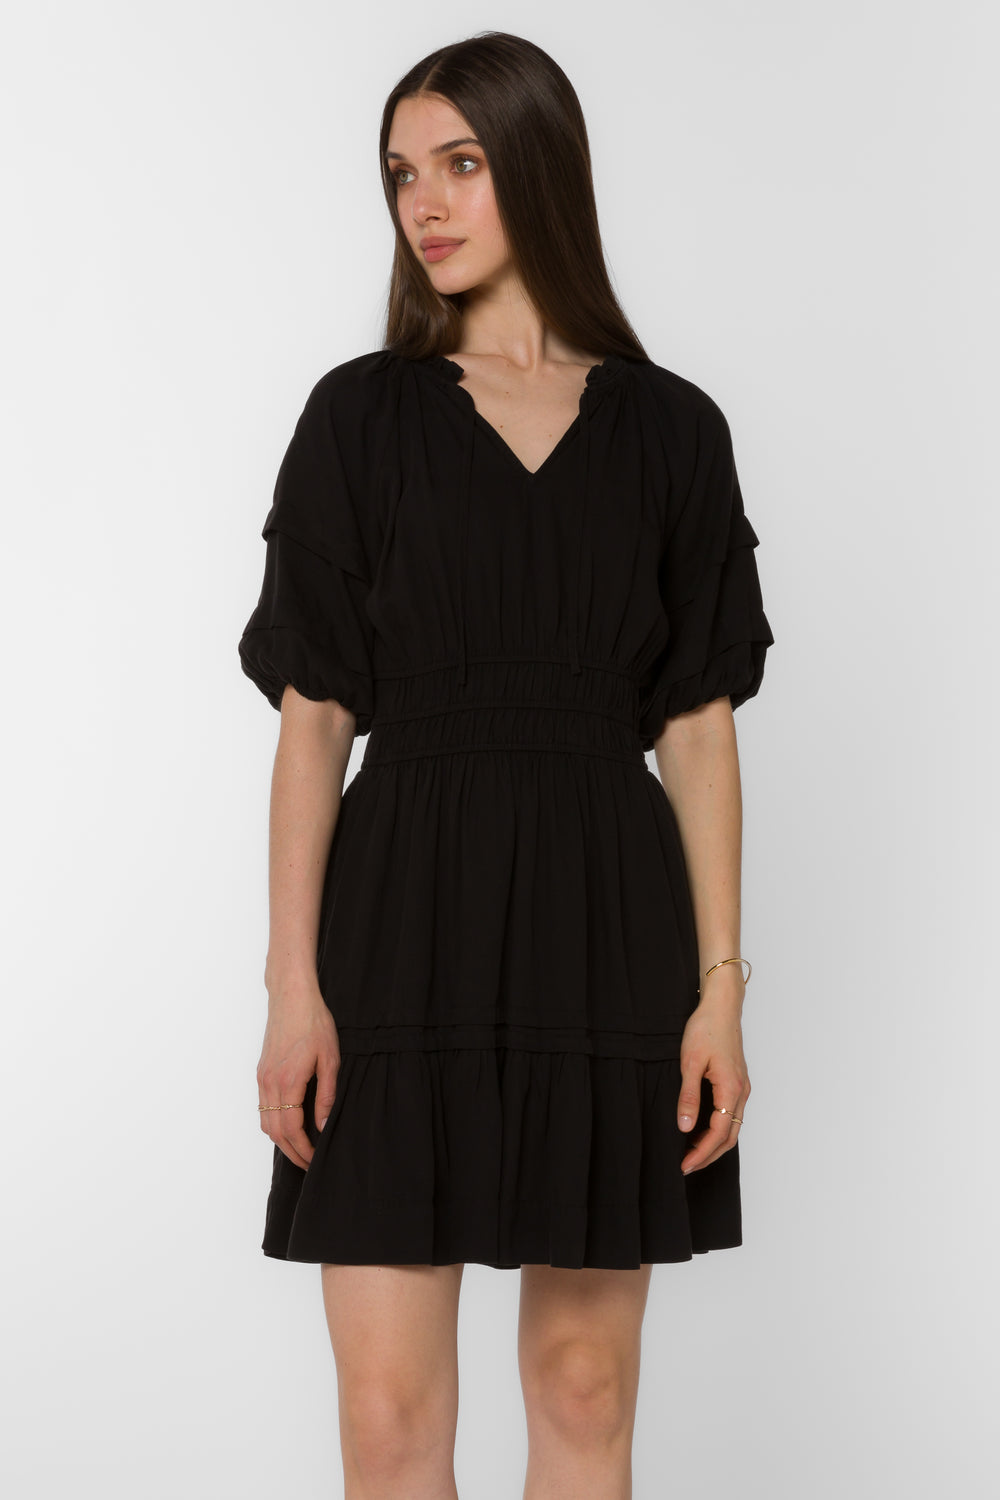 Donna Black Dress - Dresses - Velvet Heart Clothing